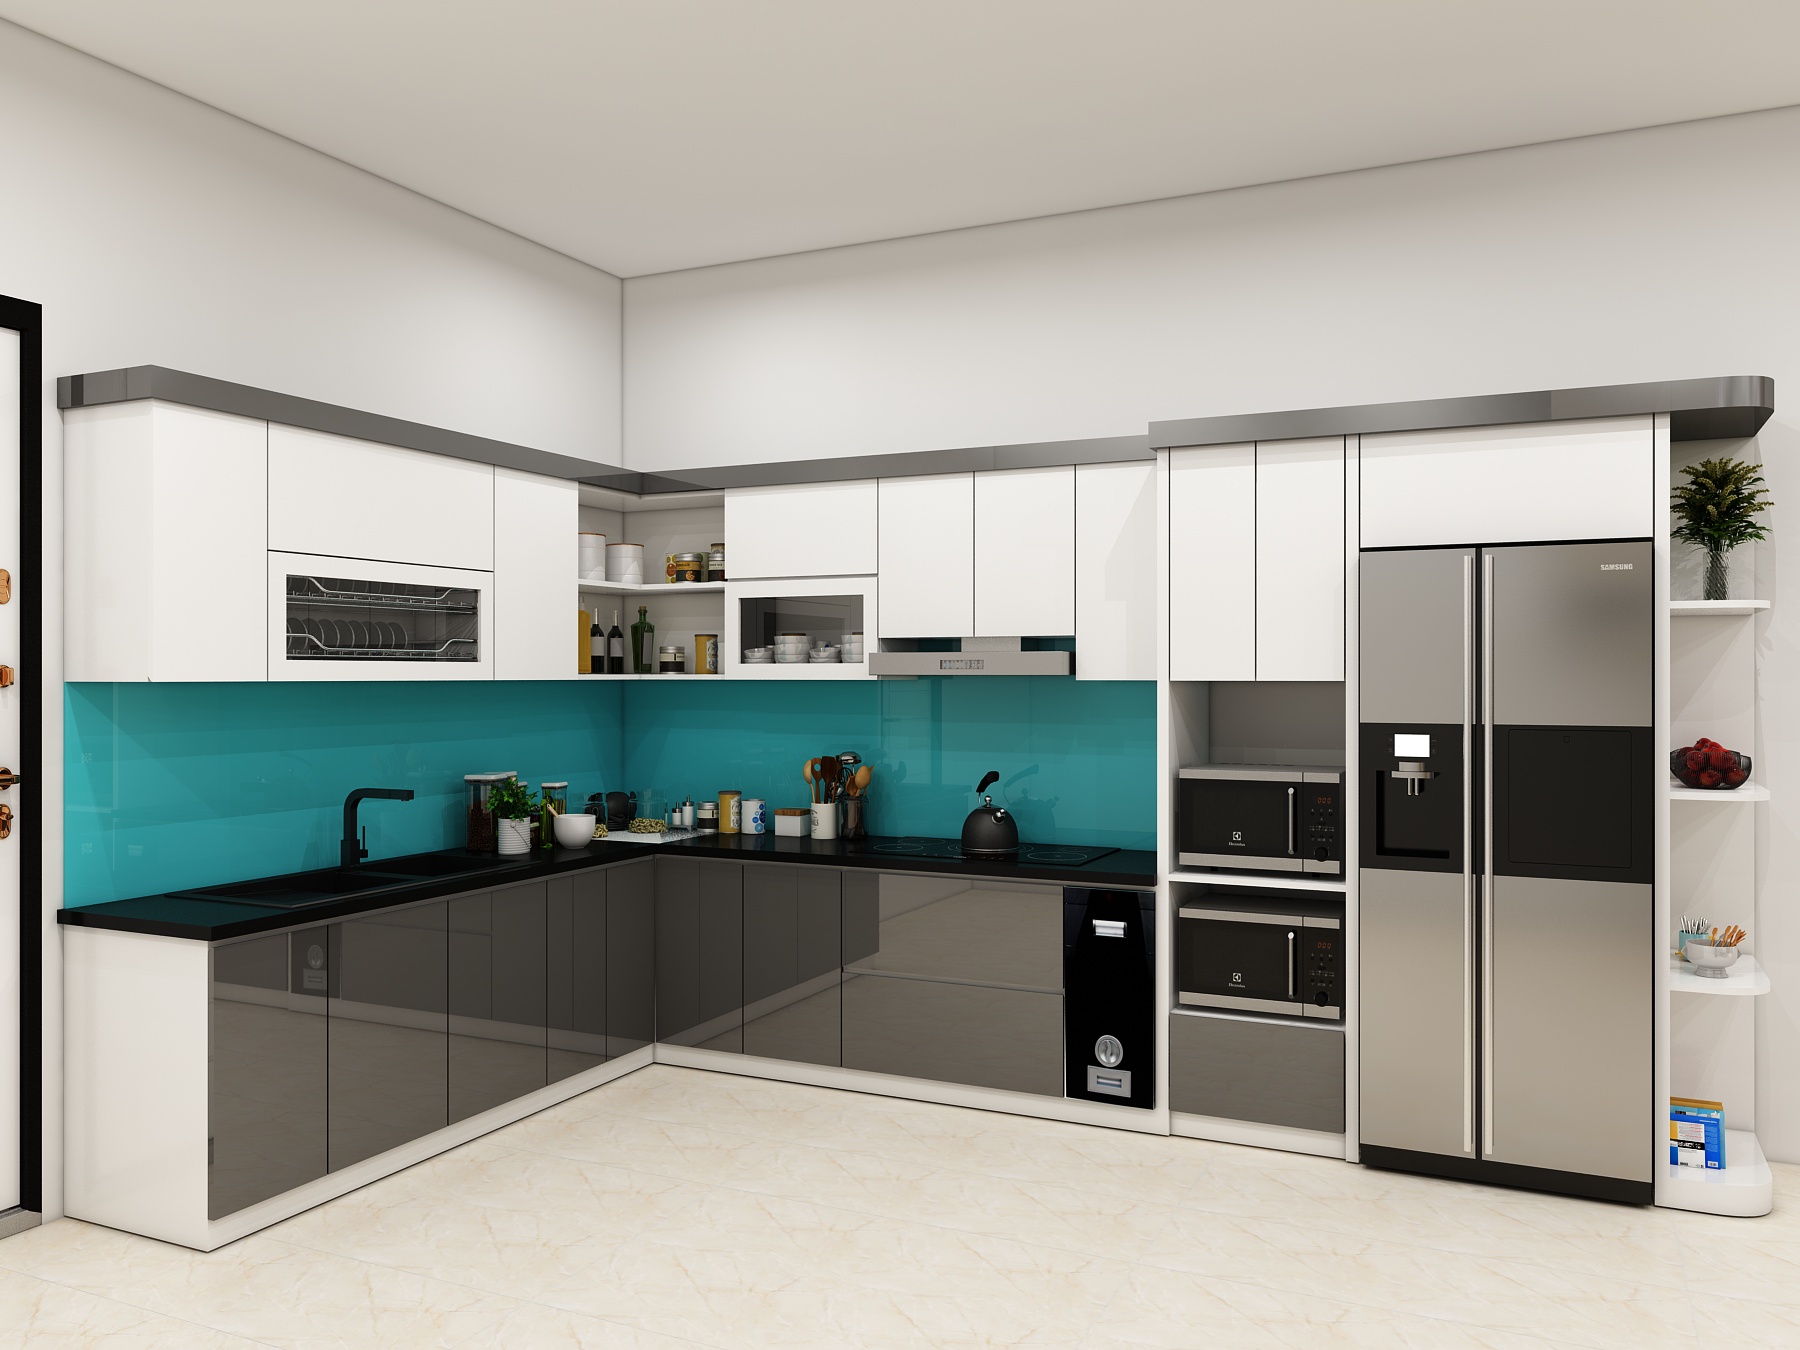 acrylic được ứng dụng làm tủ bếp chữ L thiết kế hiện đại cho căn hộ lớn